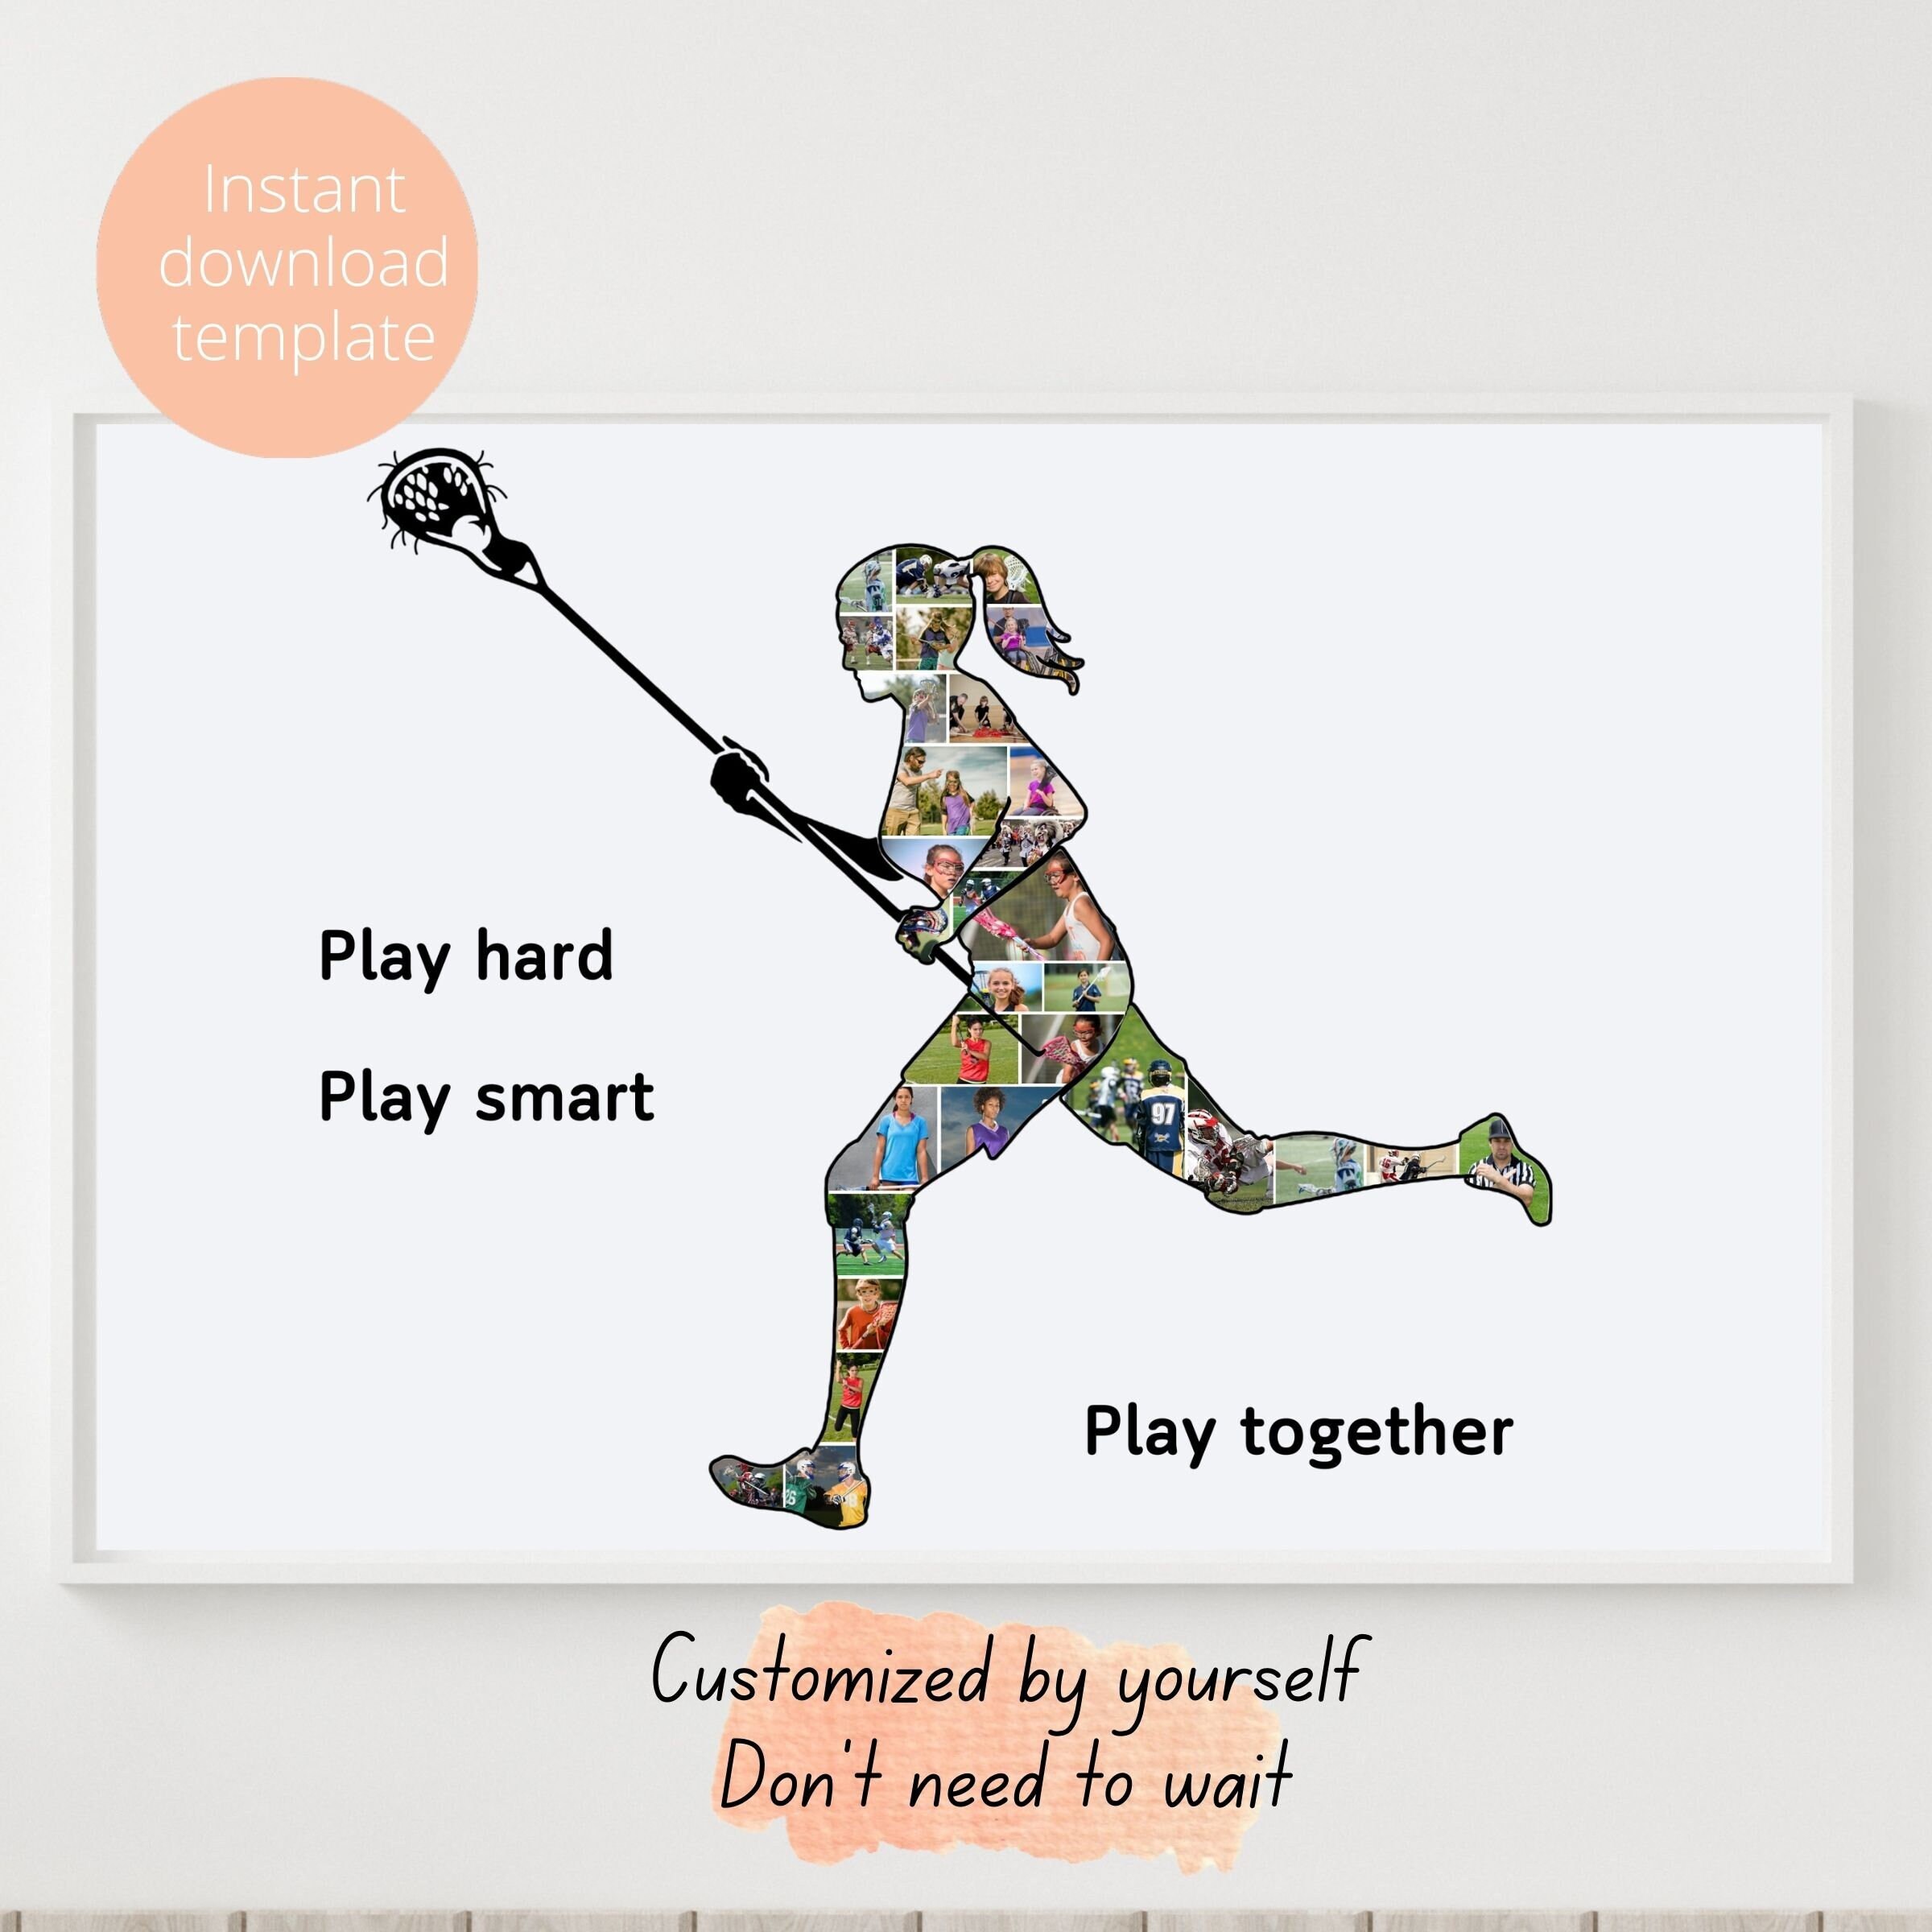 Girls'/Women's Lacrosse Sticks - Purple Mini Art Print by goalgirlgear